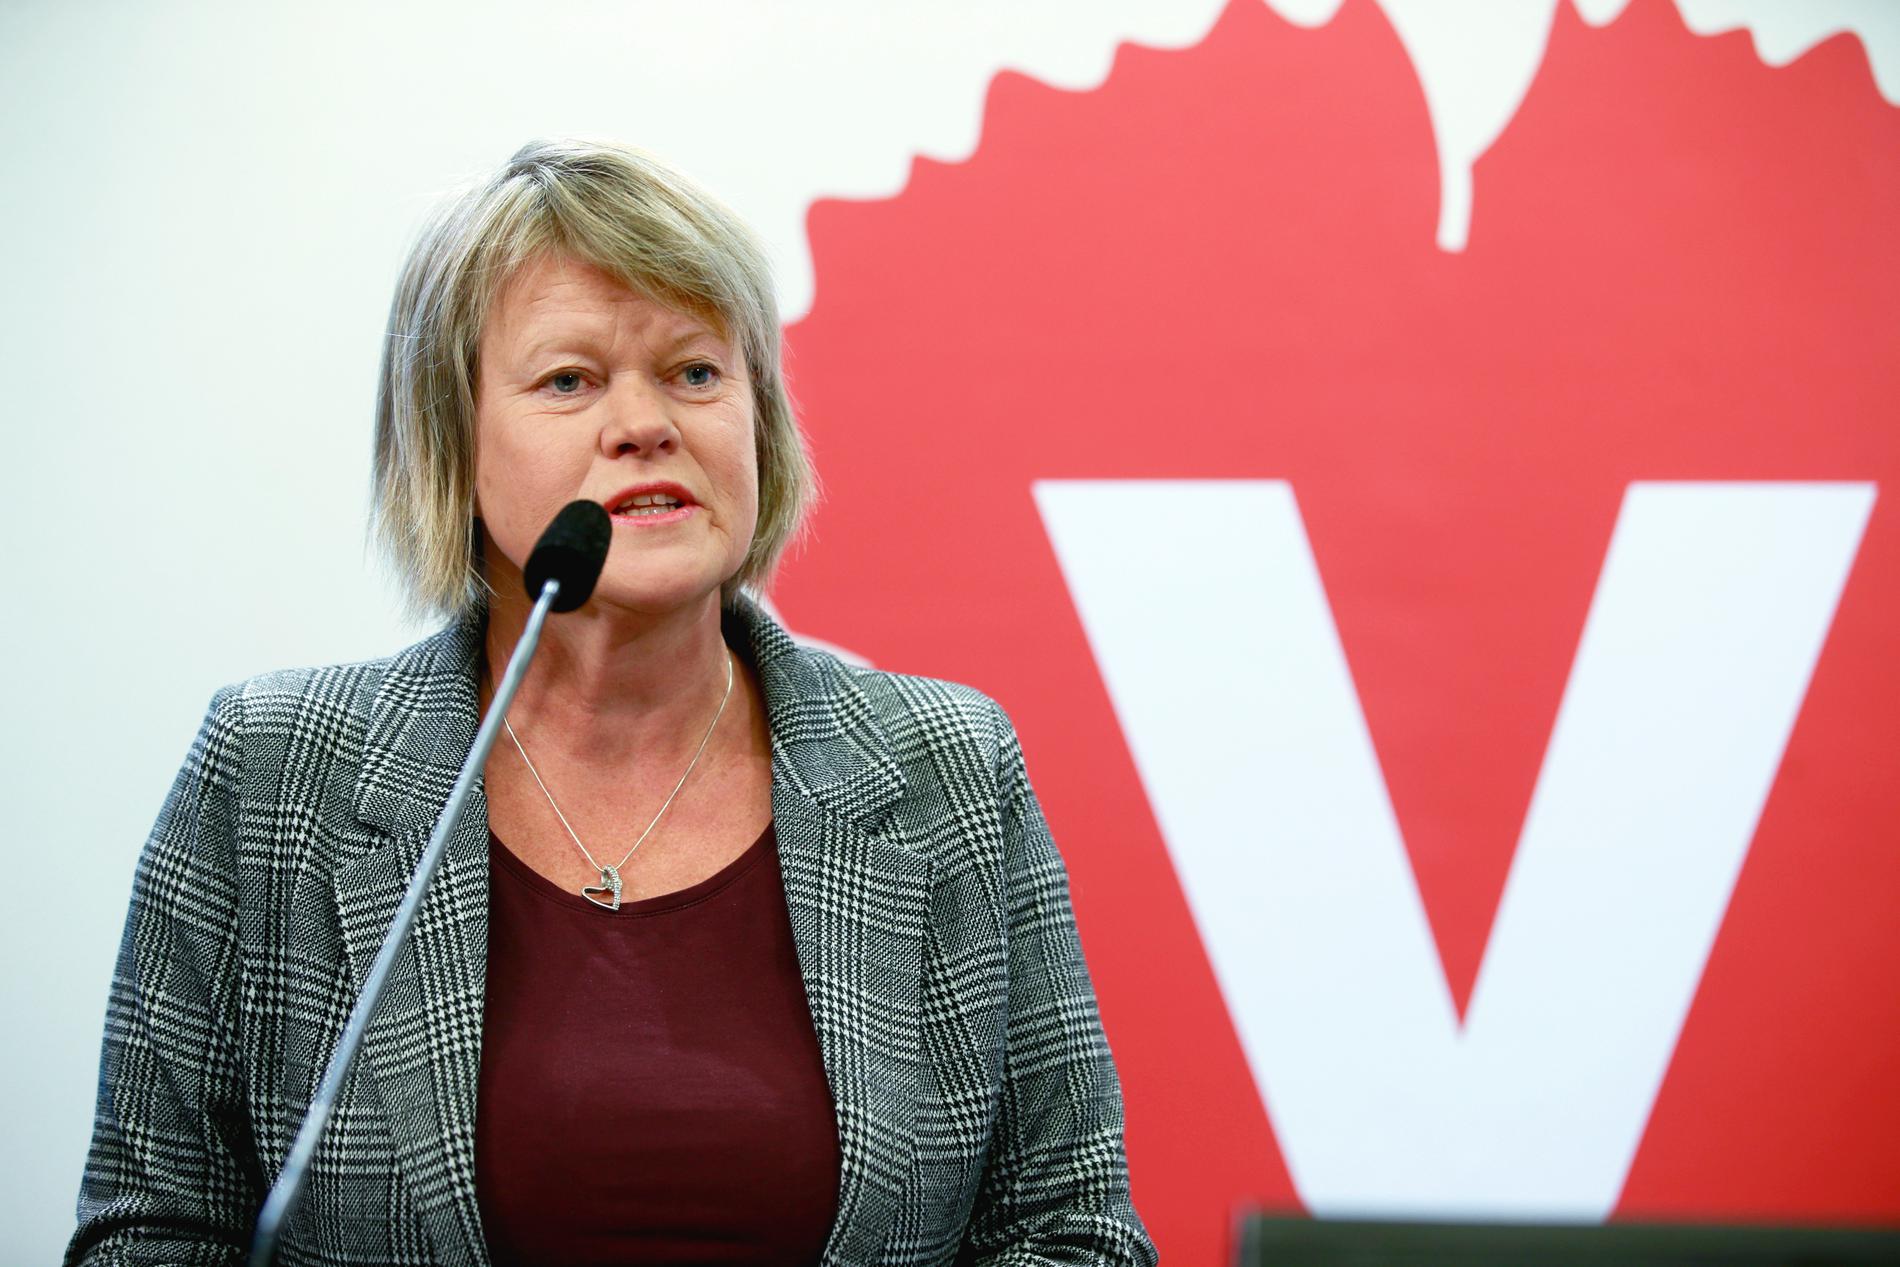 Vänsterpartiets Ulla Andersson, ekonomiskpolitisk talesperson, kandiderar inte till jobbet som ny partiledare. Arkivbild.